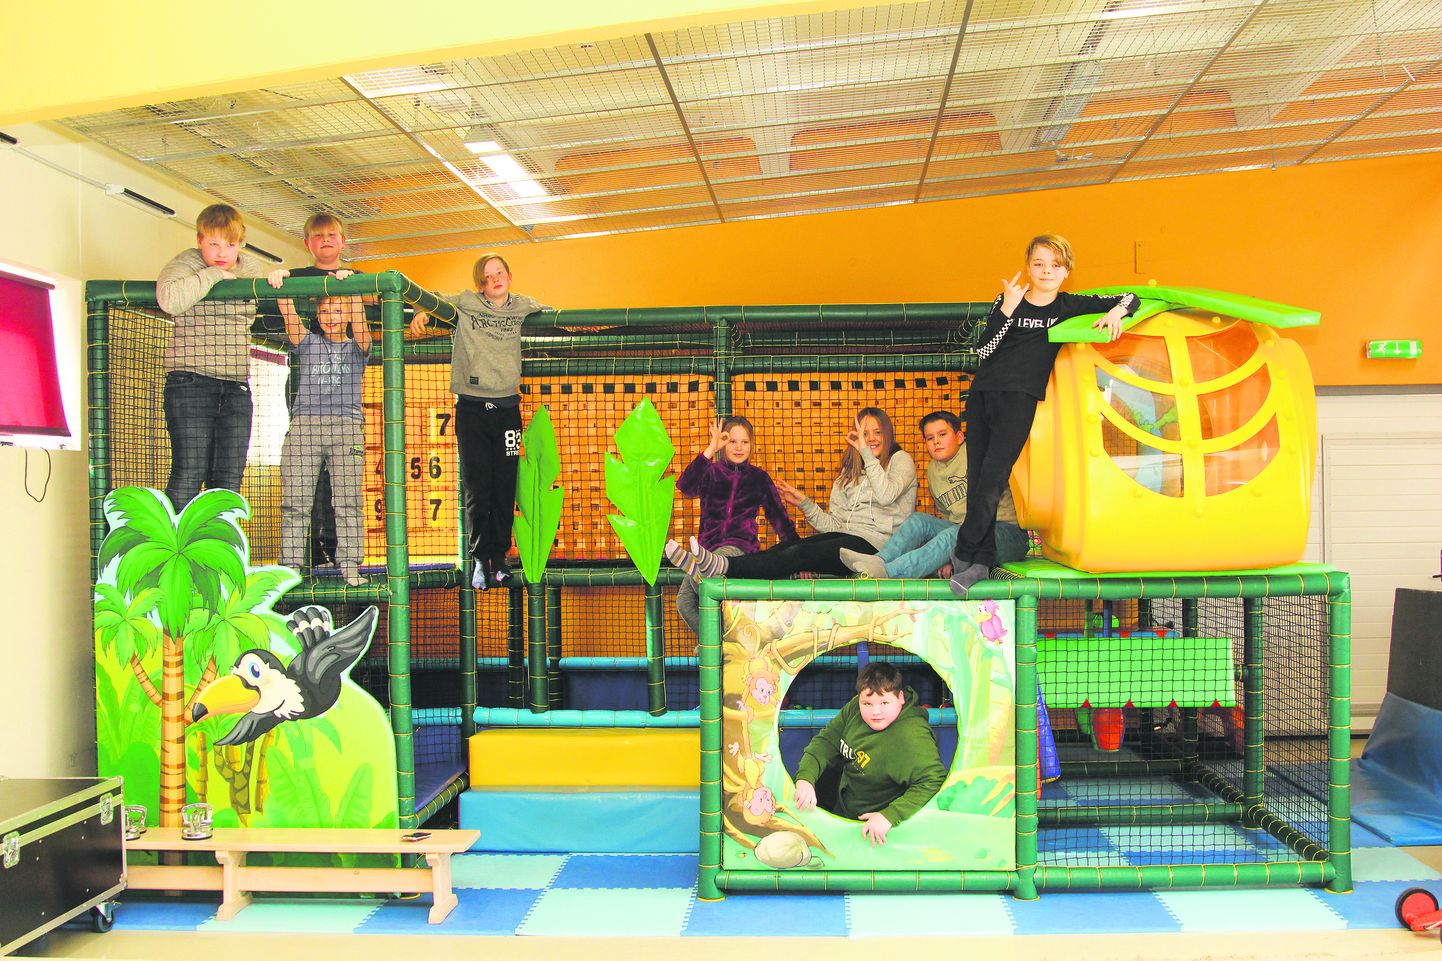 Türi noortekeskuses võib iga päev ronimisrajal turnida. See pakub laialt lõbu ka kooliealistele lastele.